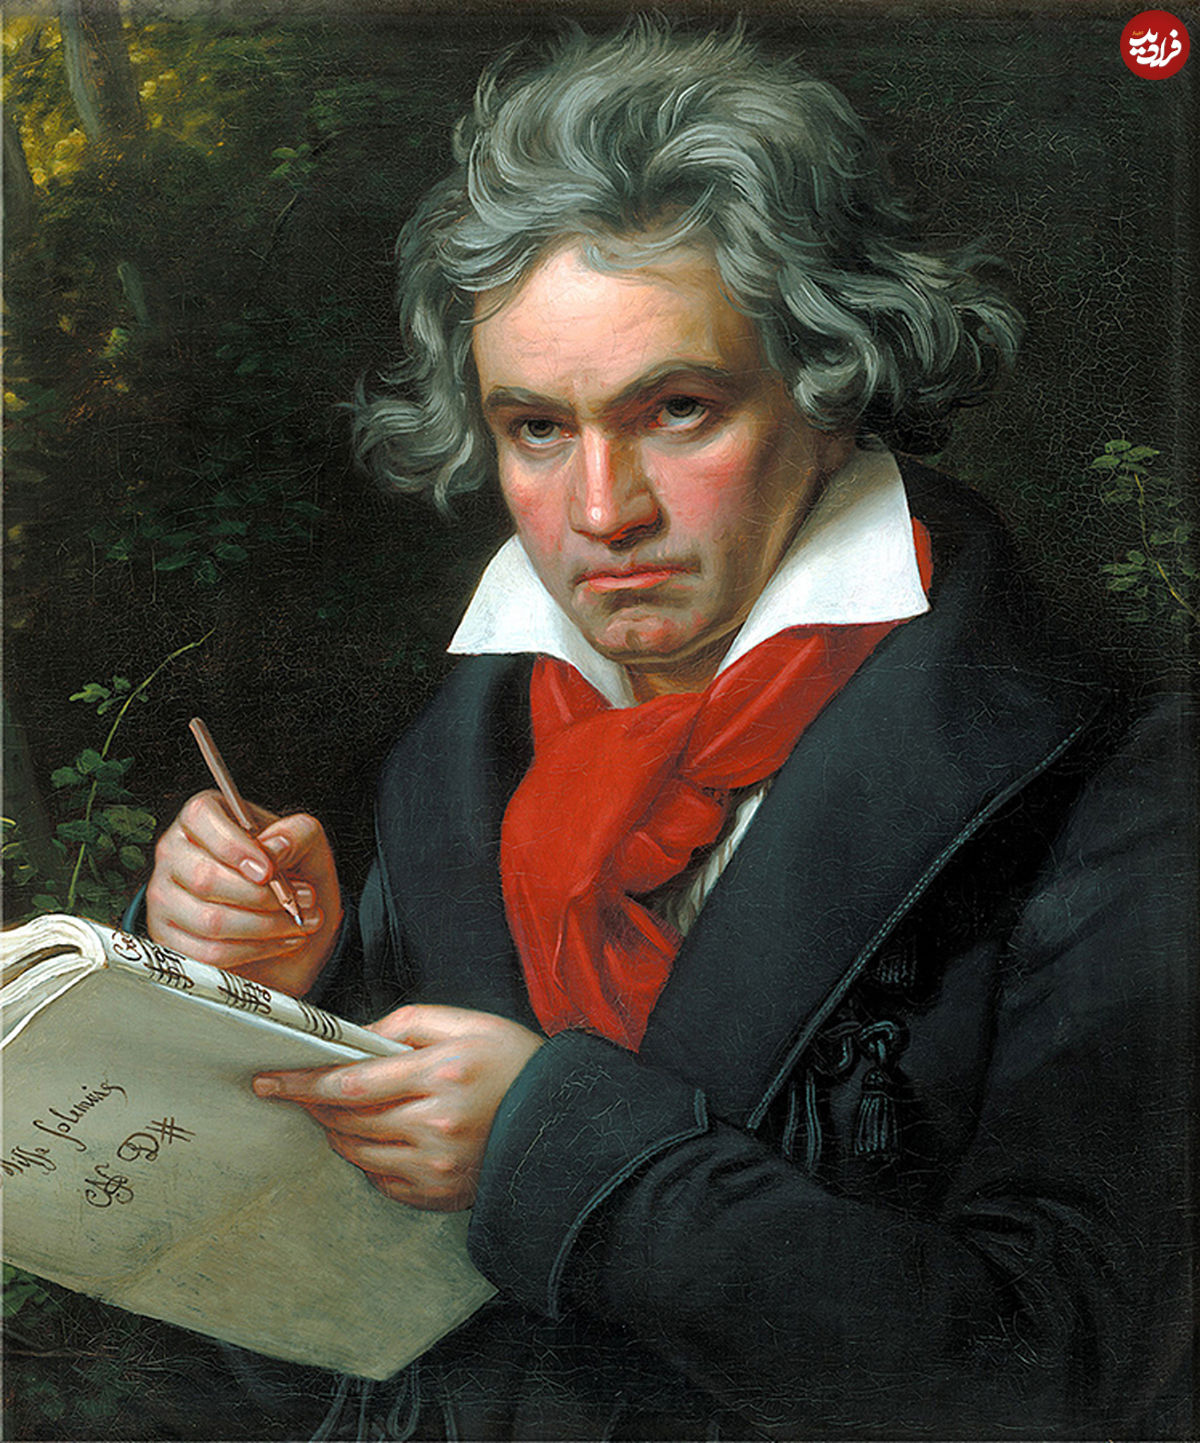 بتهوون؛ موسیقیدانی که طرفدار ناپلئون بود